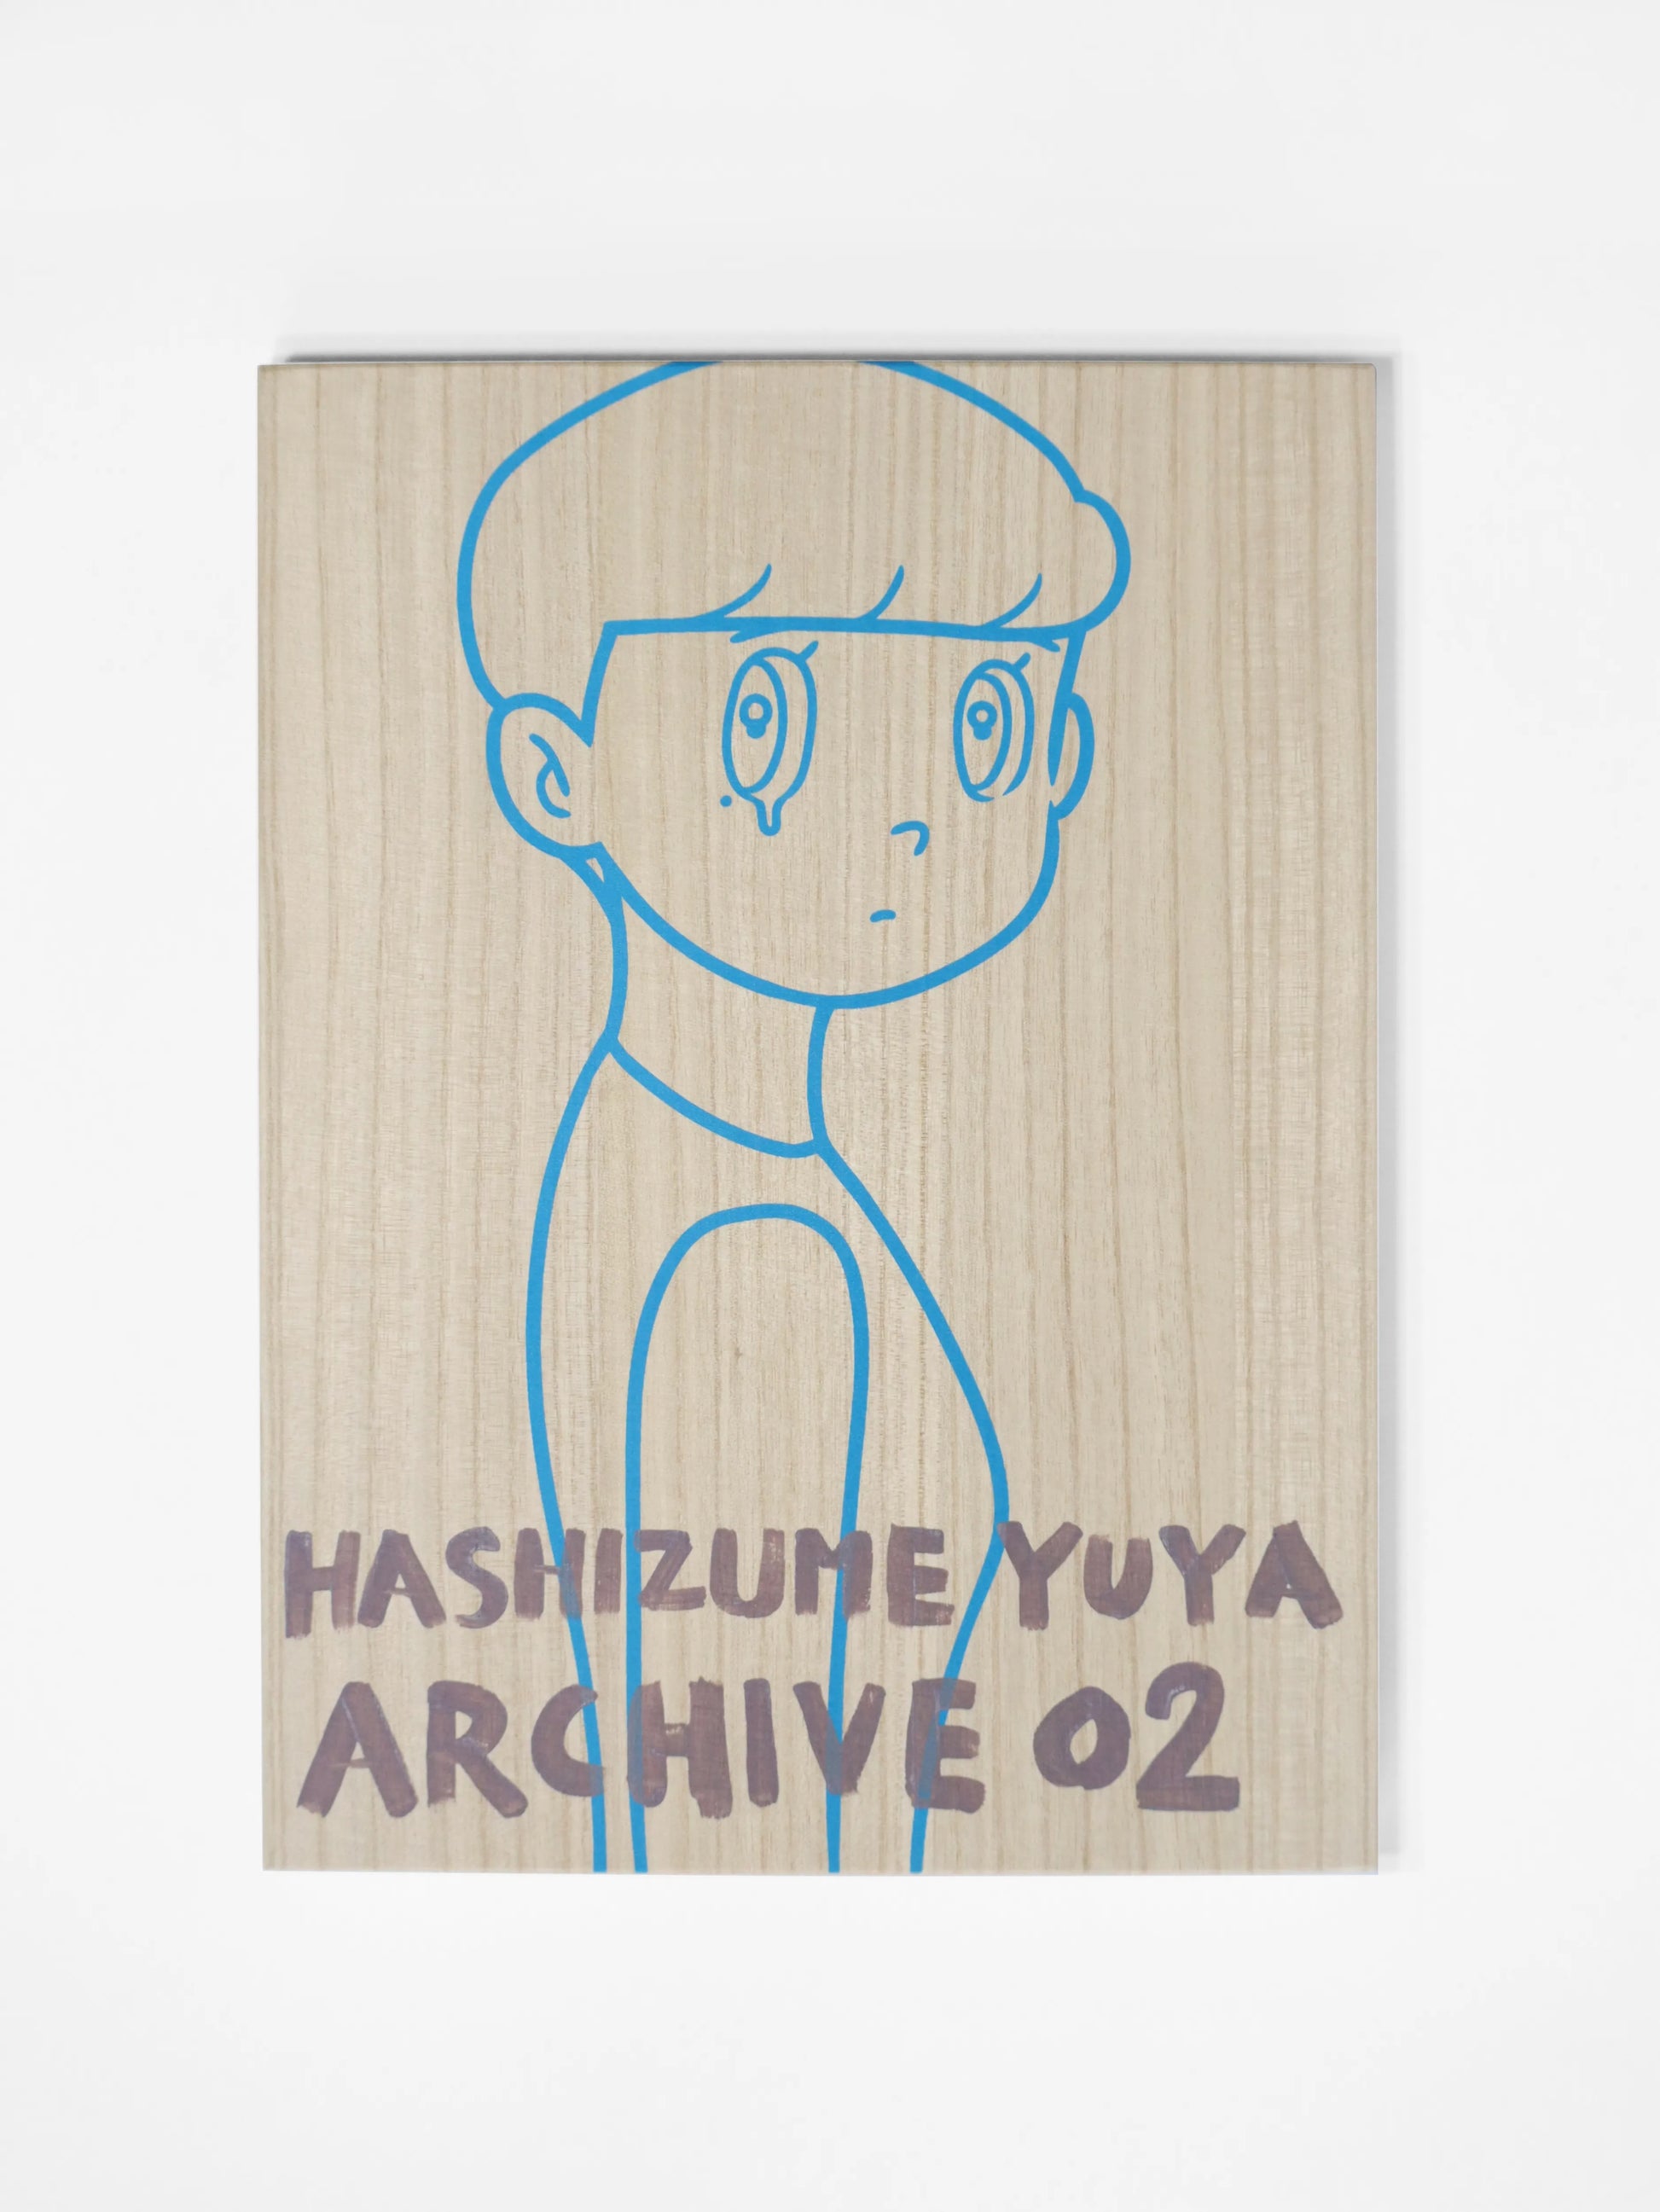 13,612円YUYA HASHIZUME ARCHIVE BOX 02 ハシヅメユウヤ